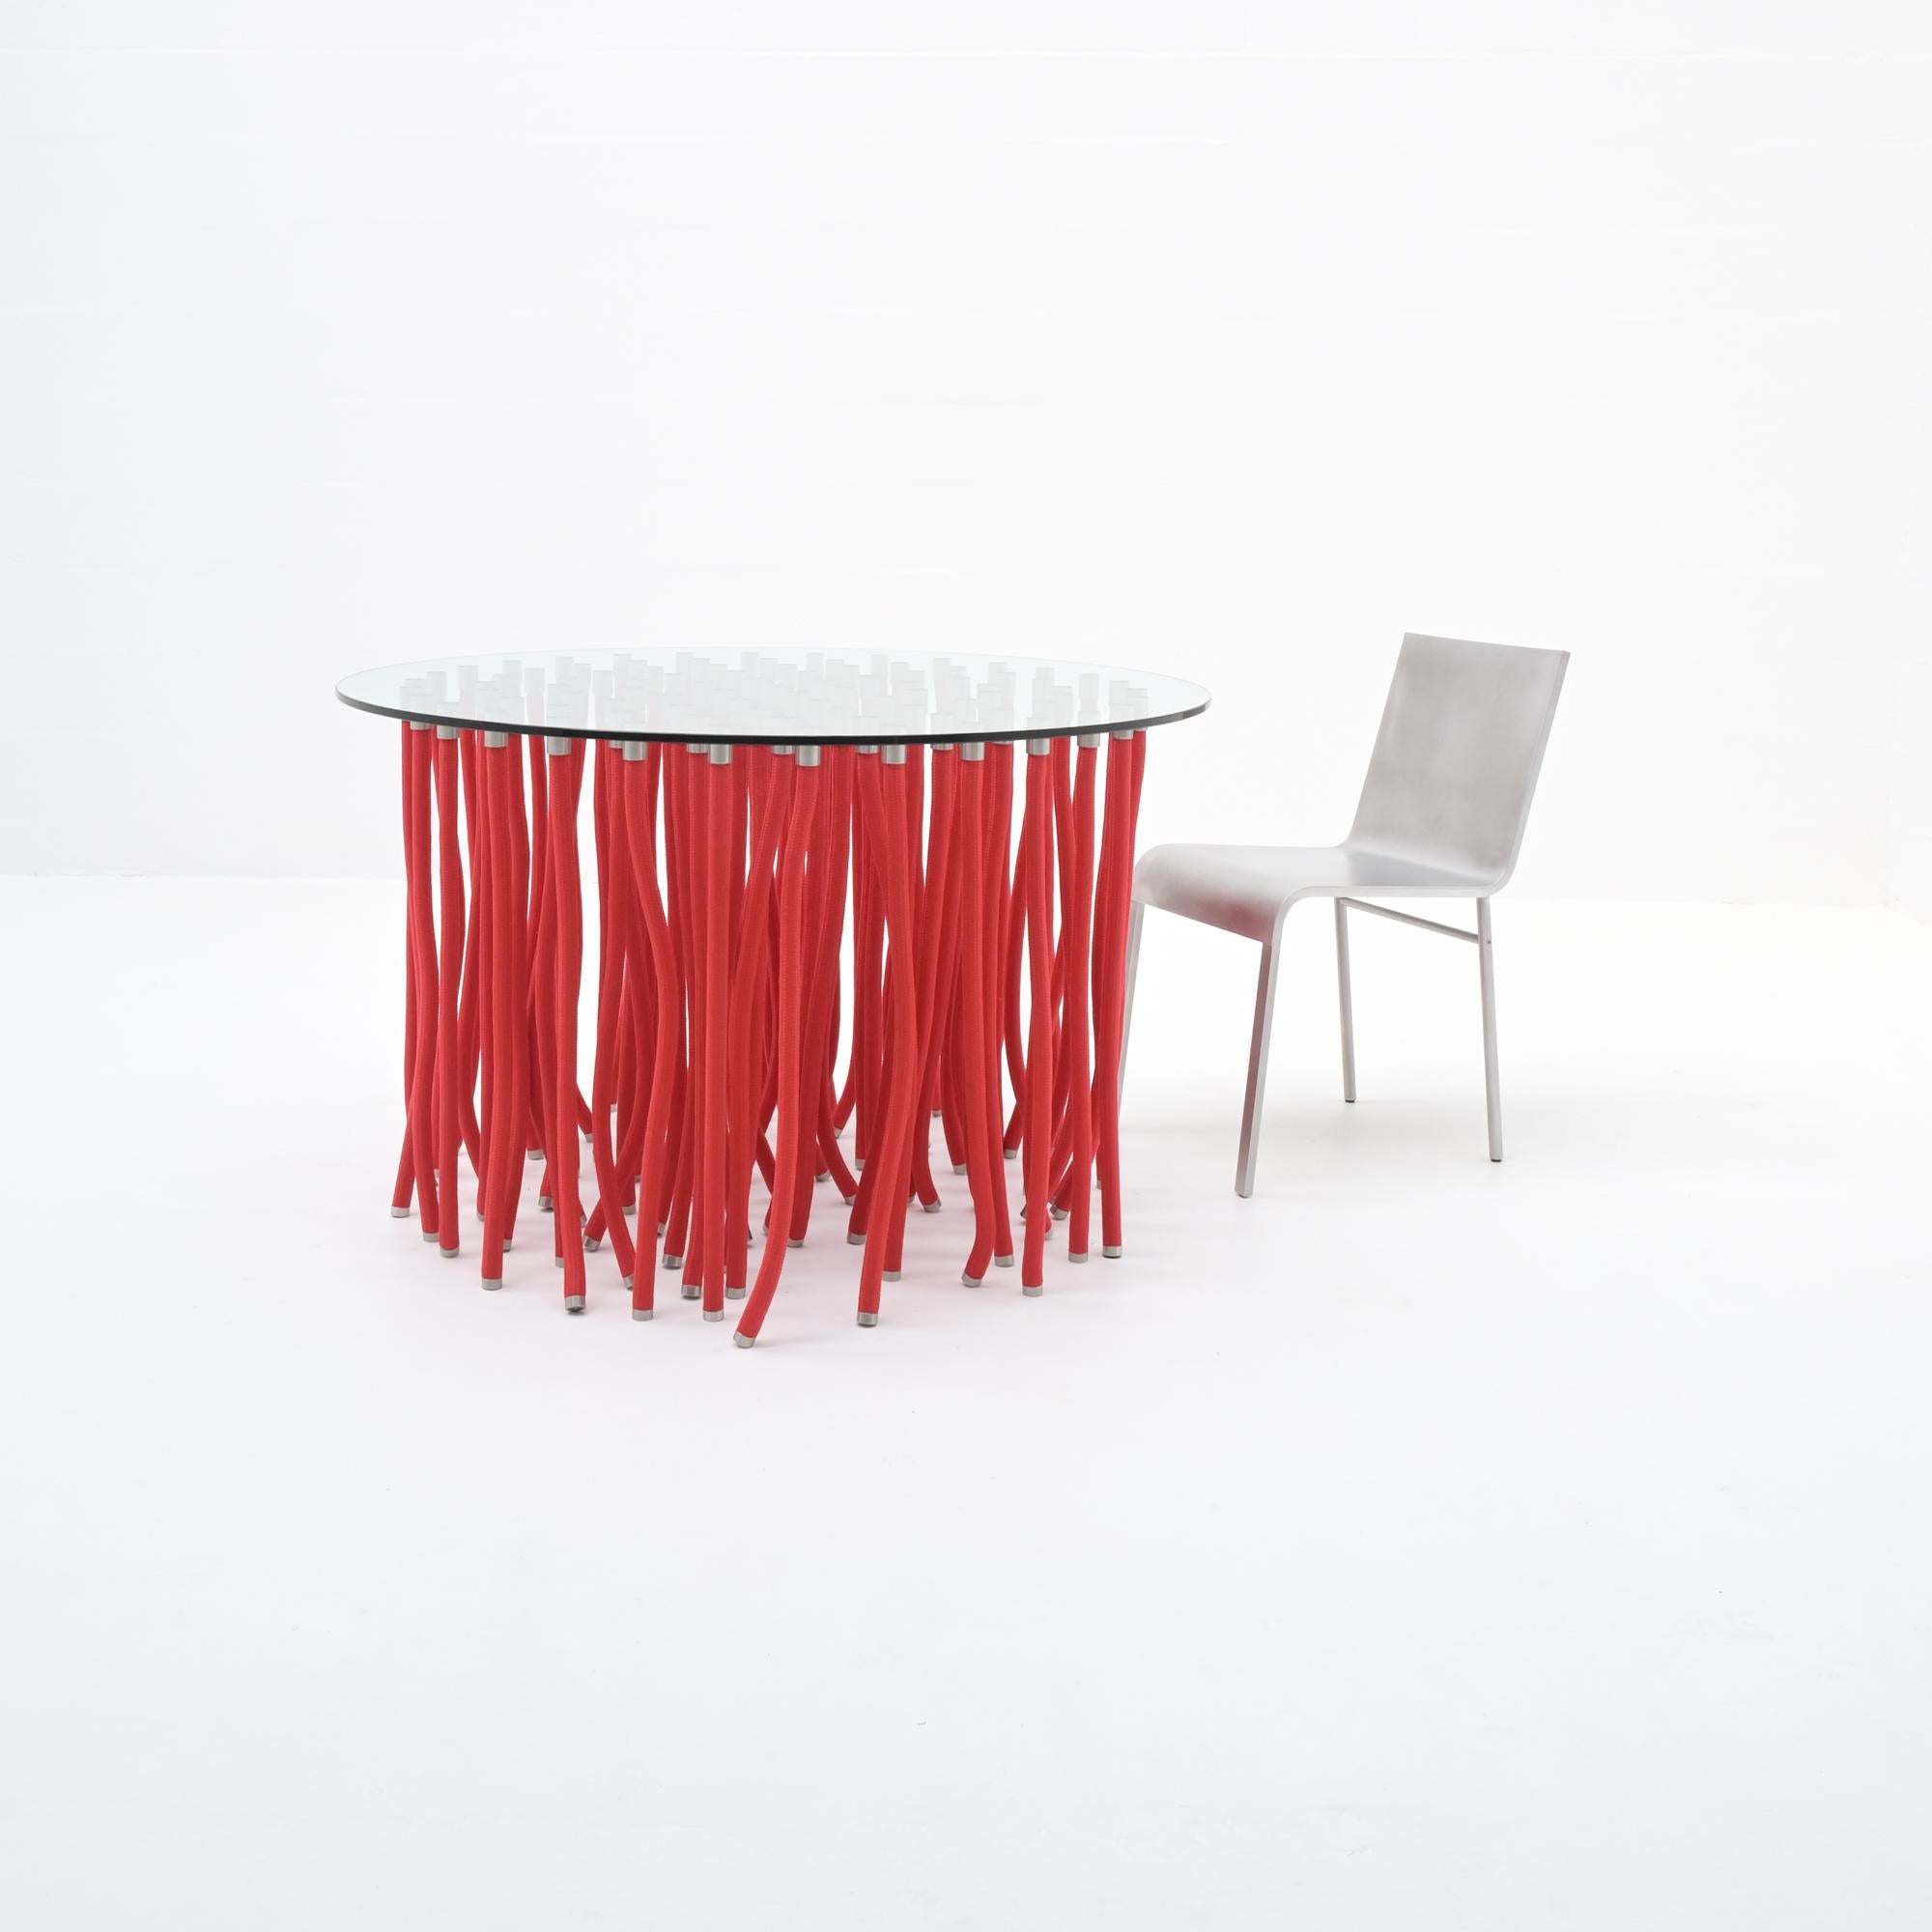 Dieser rote ORG-Esstisch wurde 2001 von Fabio Novembre für Cappellini entworfen. Dieser erstaunliche Tisch besteht aus einer Kristallglasplatte, die von einem mit Polypropylen ummantelten Stahlseil mit freiliegenden Edelstahlbeschlägen getragen